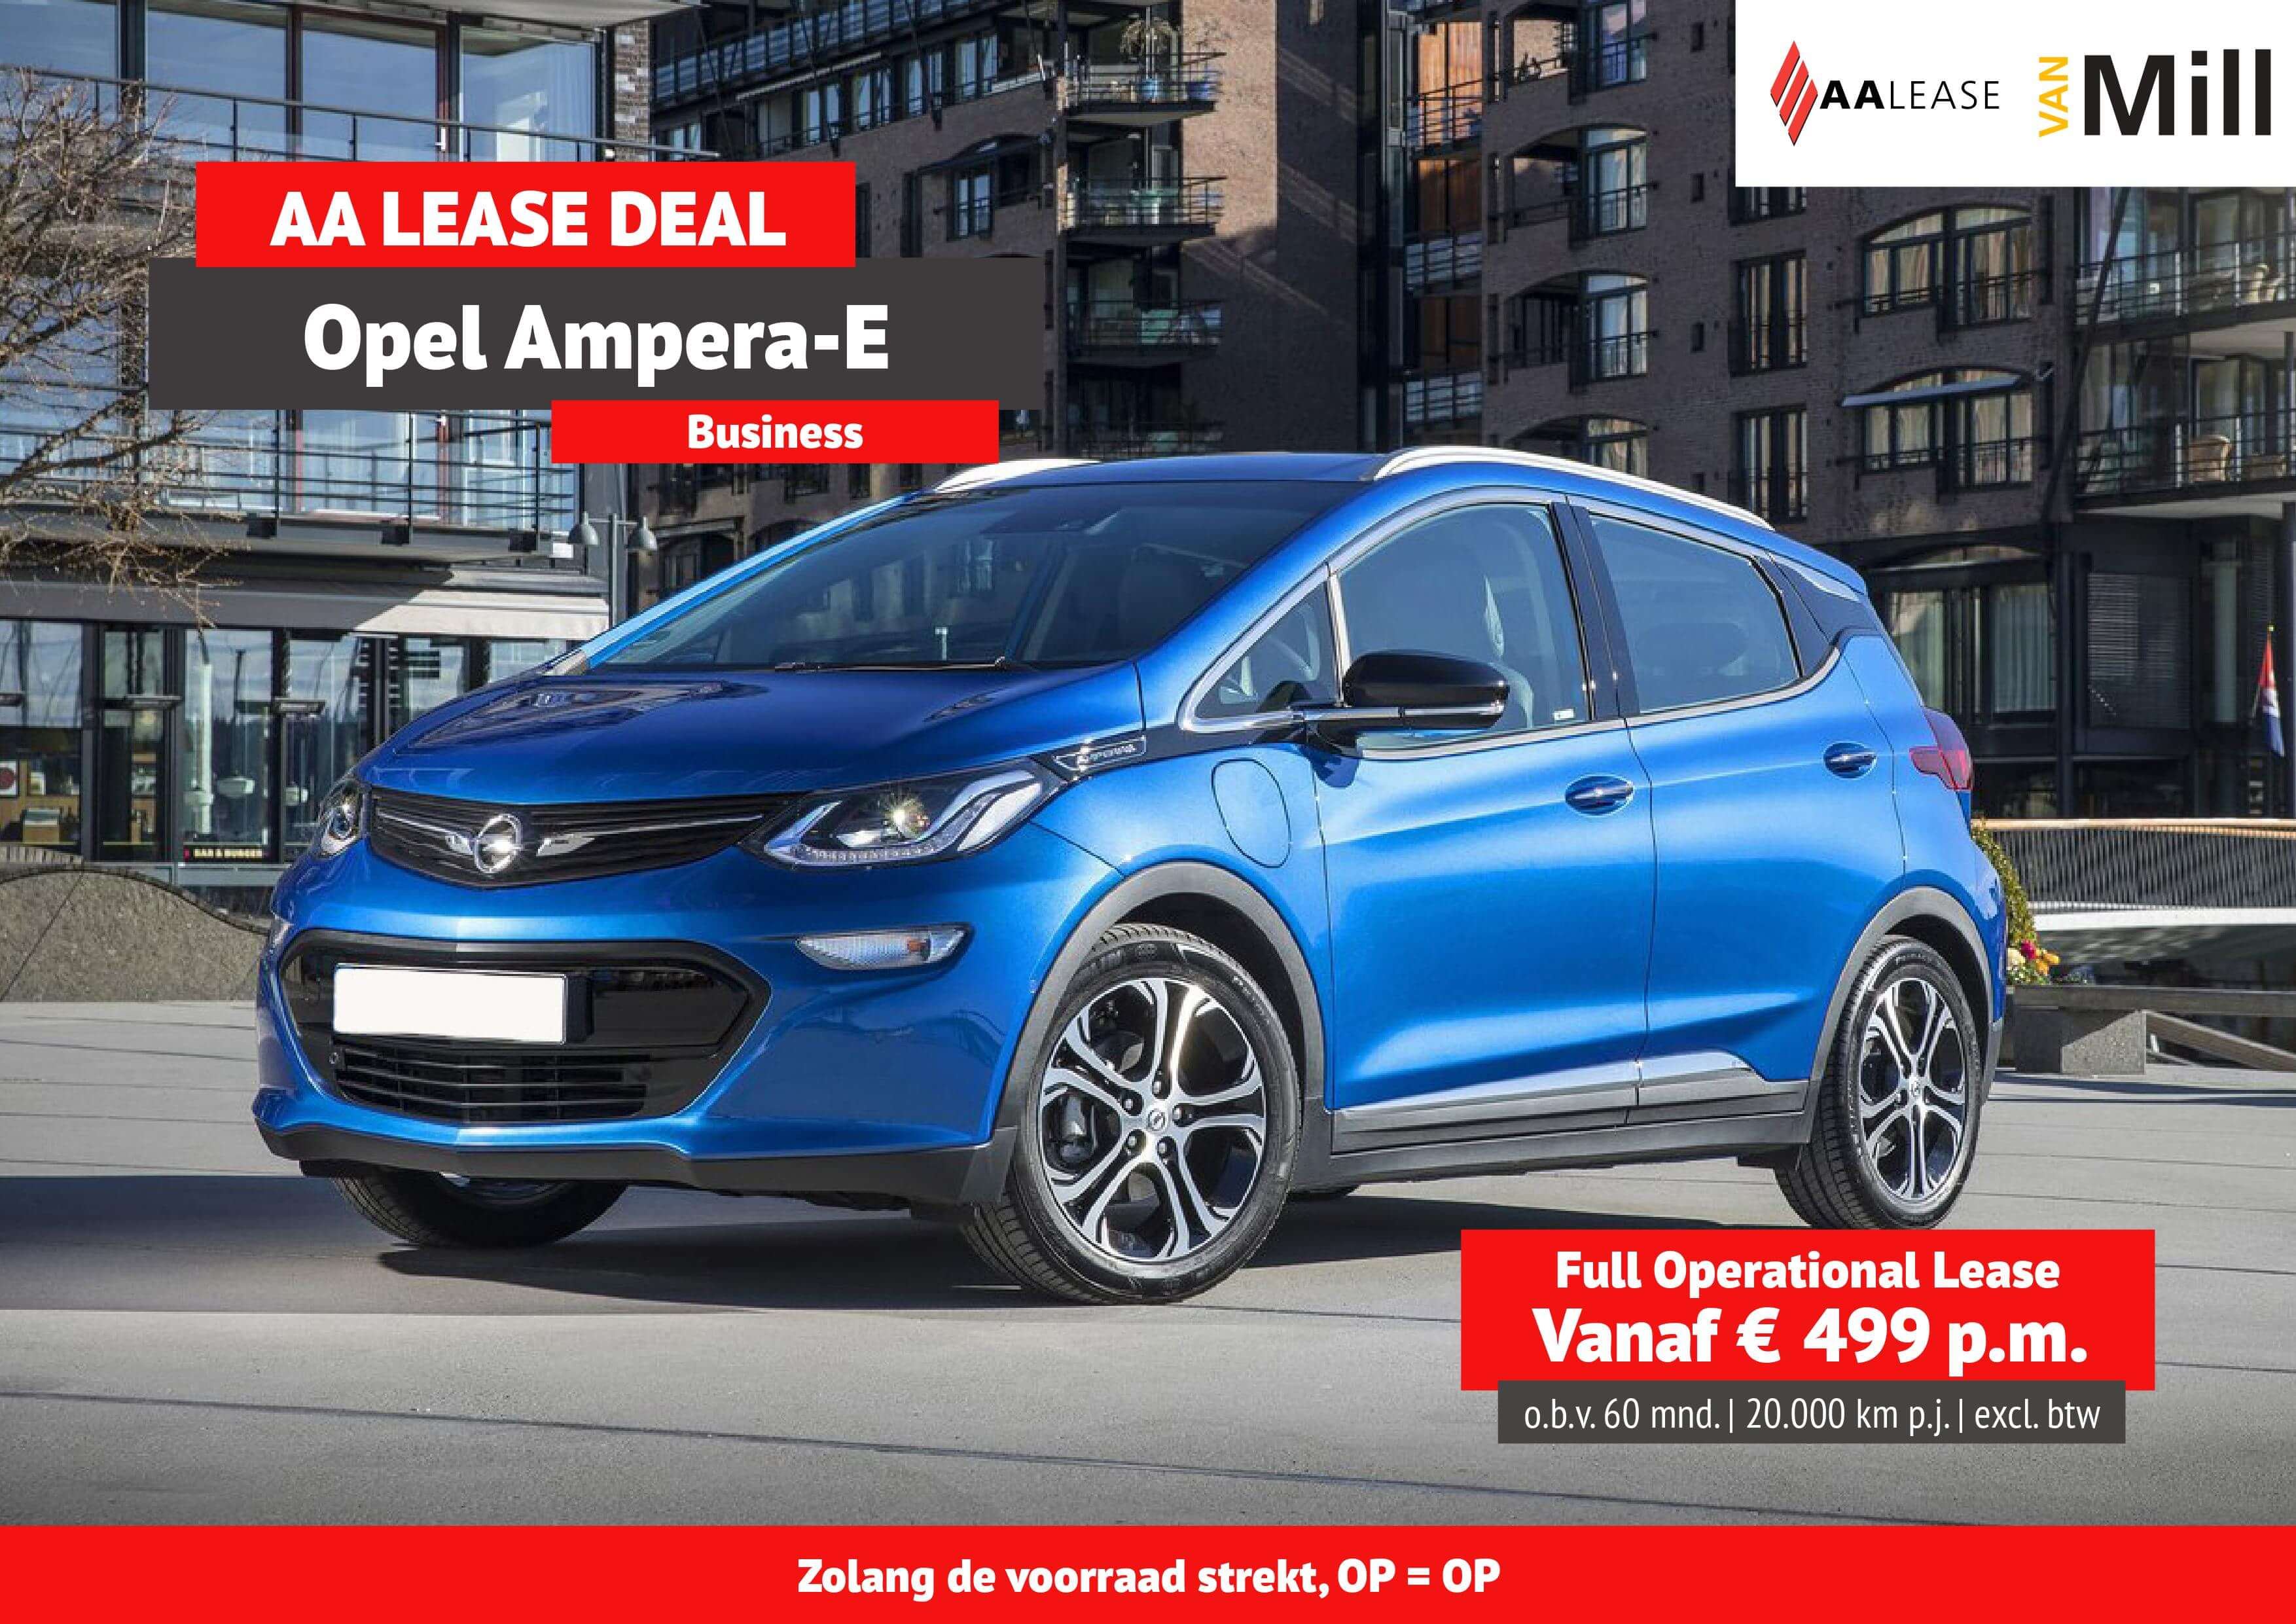 Opel Ampera-e AA lease en Van Mill banner 